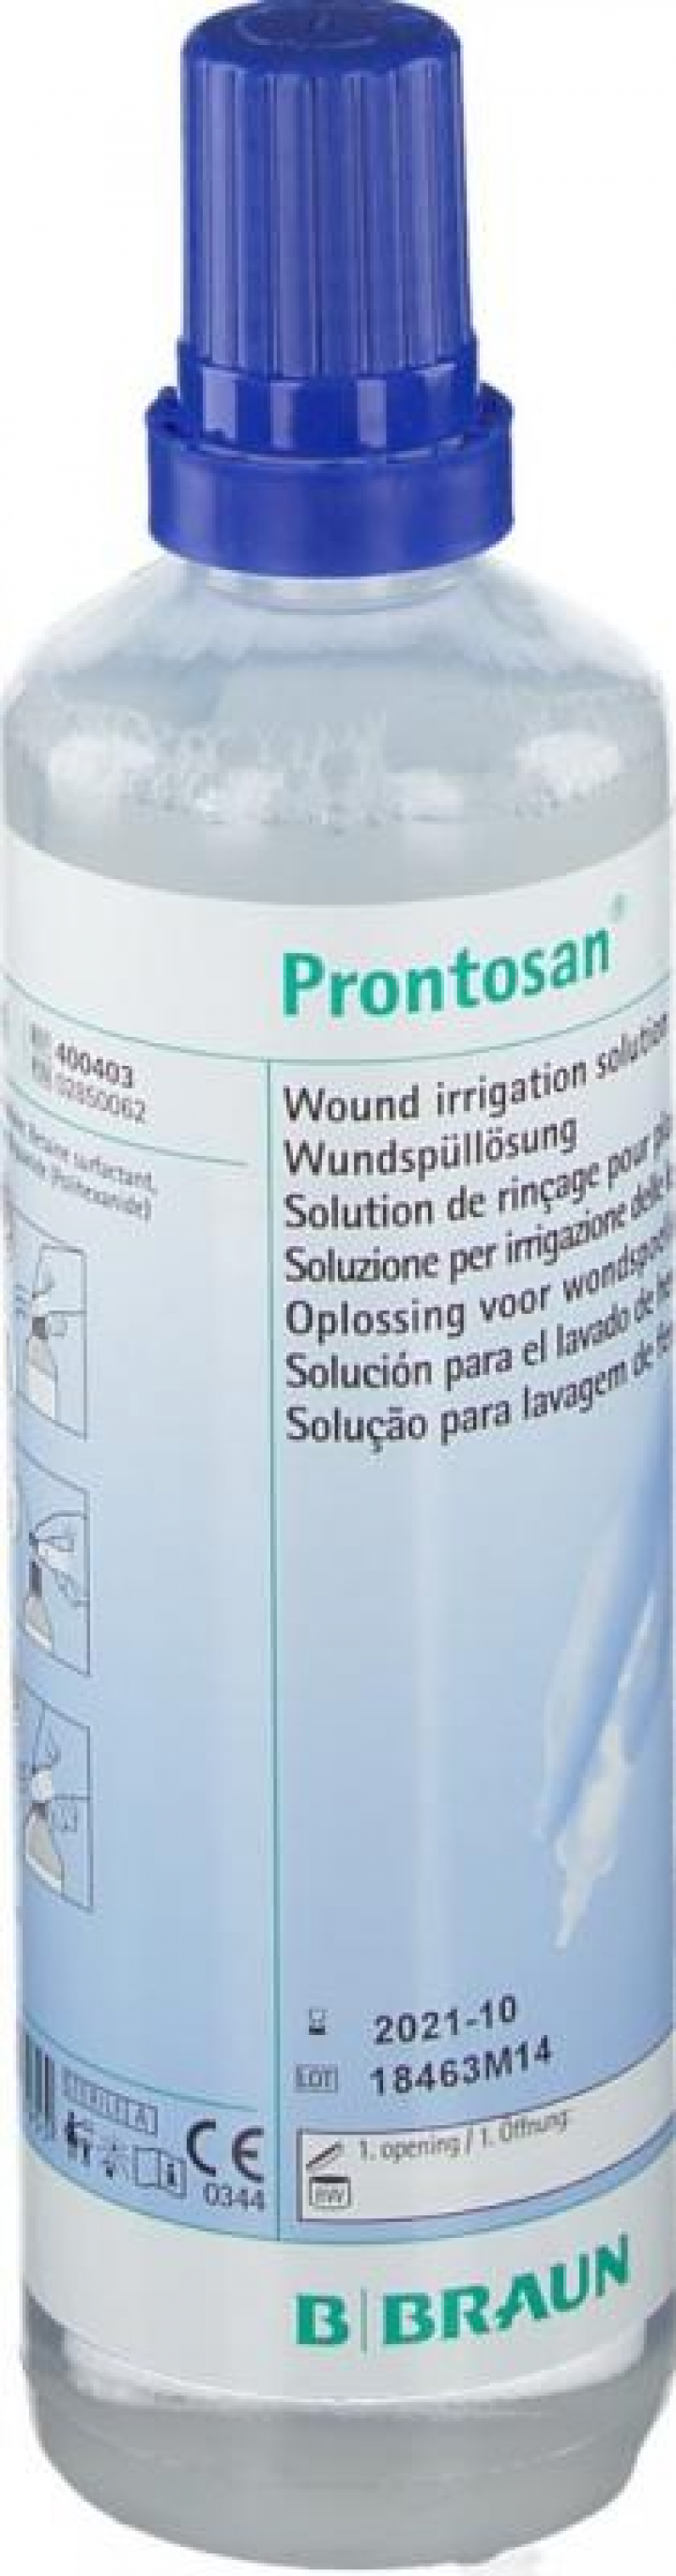 Solução de lavagem, irrigação e preparação de feridas à base de betaína e Polihexanida Prontosan 350ml